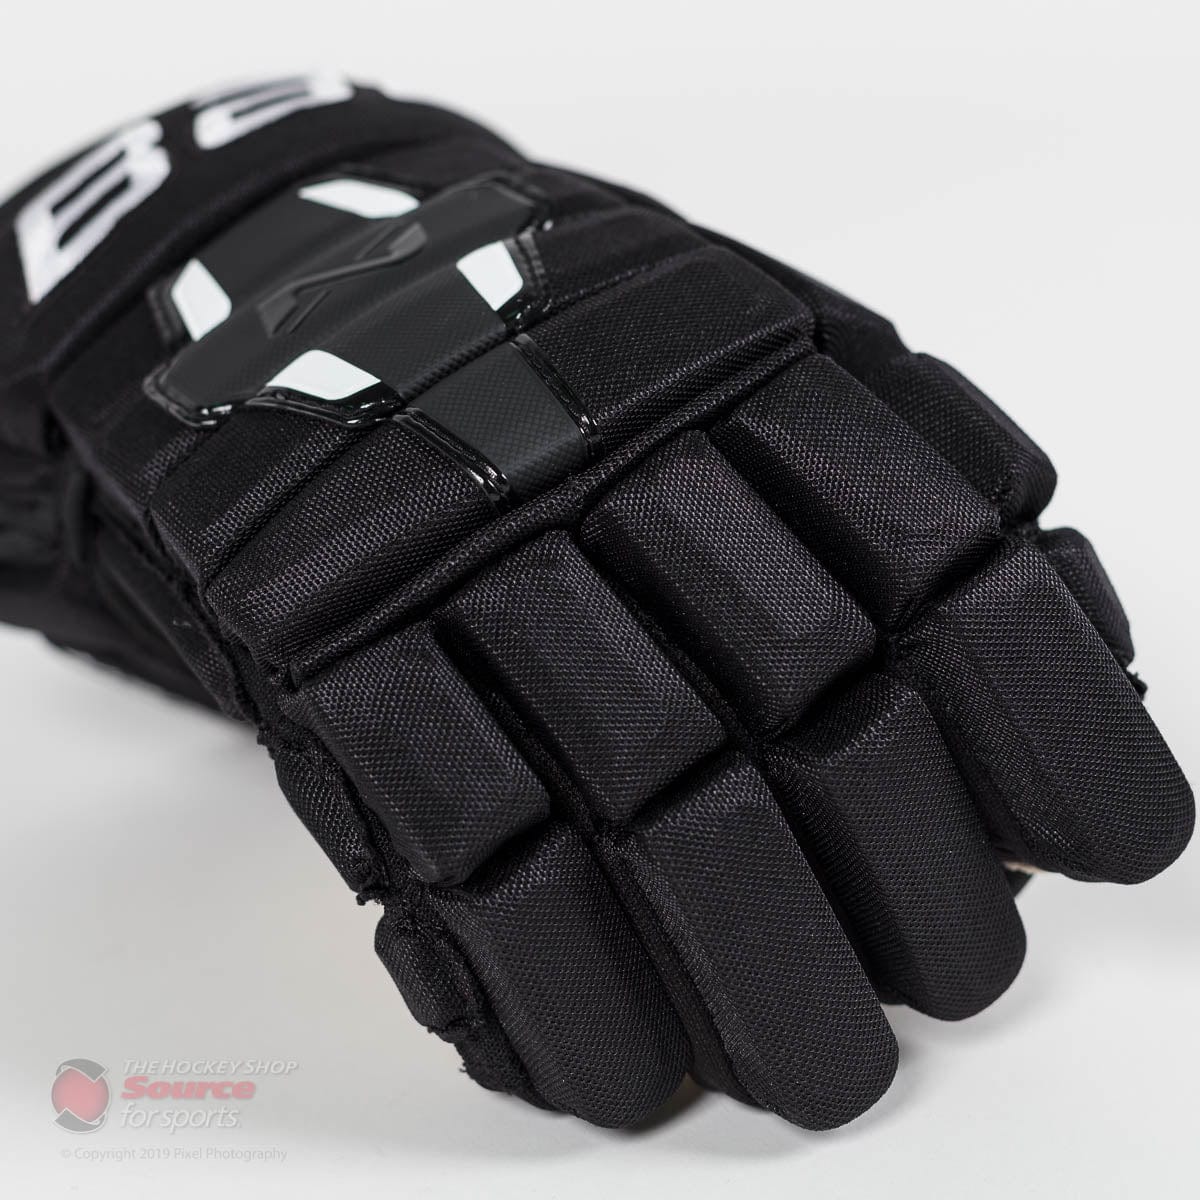 Bauer Nexus N2900 Junior Hockey Gloves